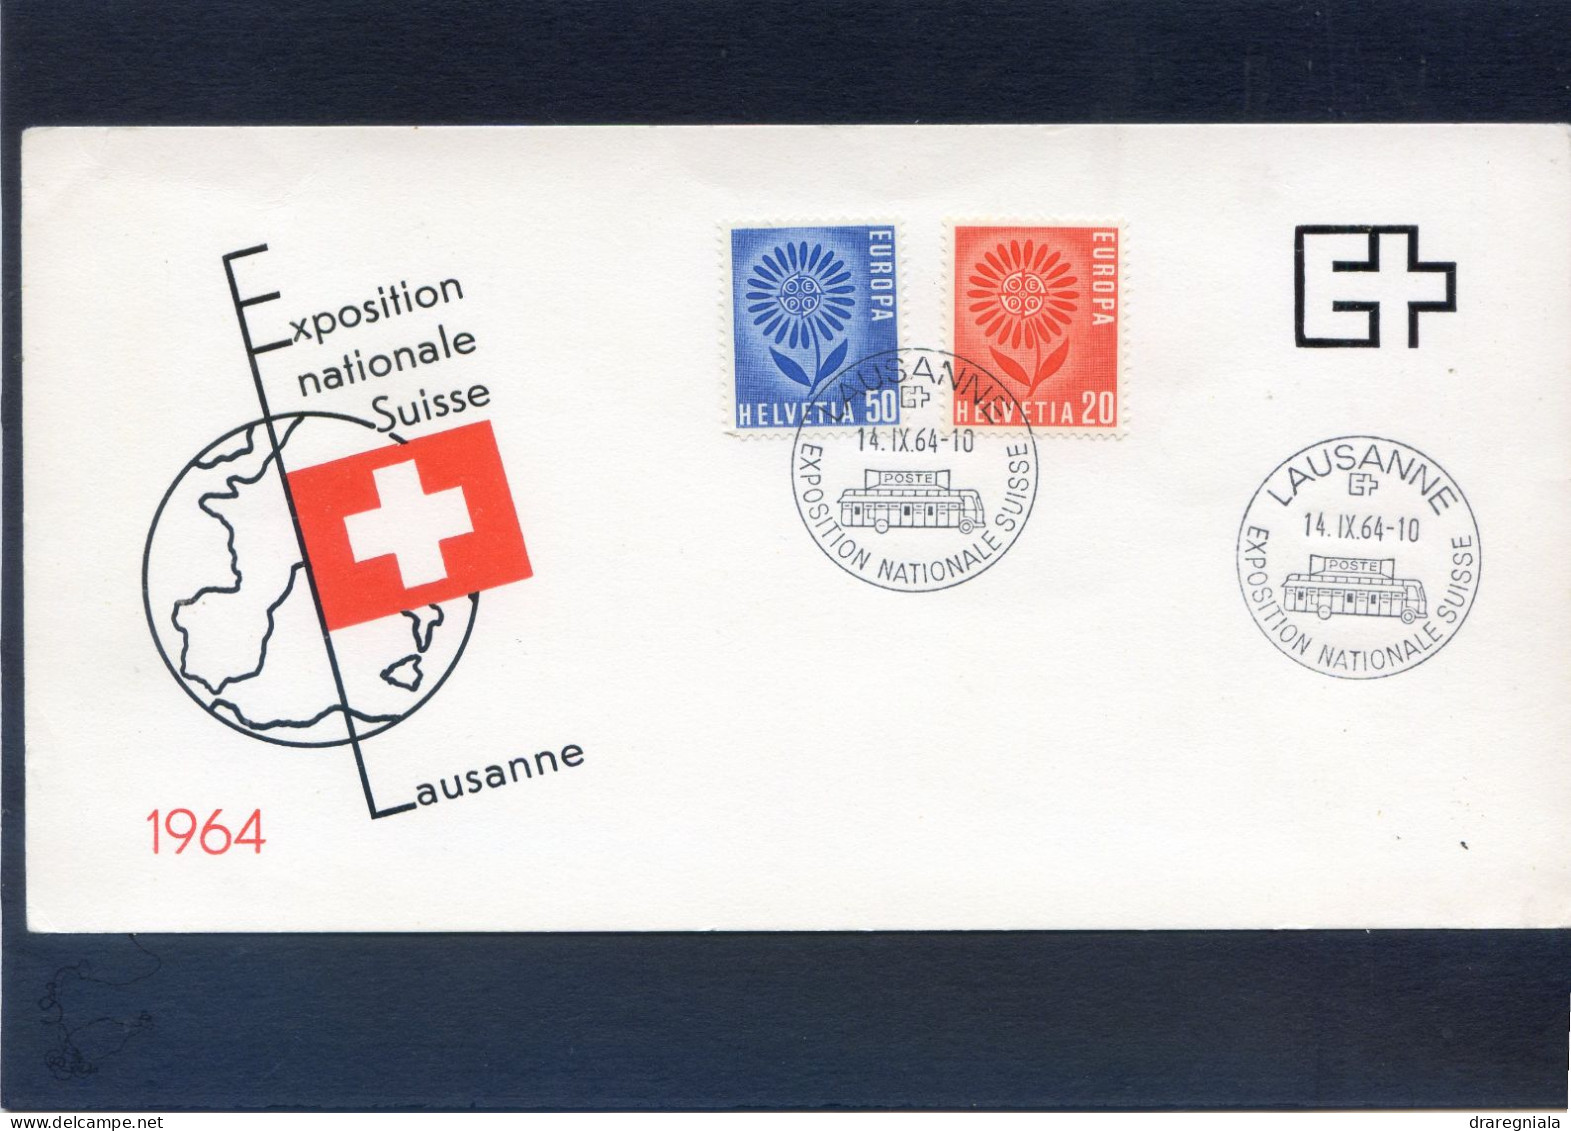 Carte Souvenir Exposition Nationale Suisse Lausanne 1964 14 9 64 - Covers & Documents